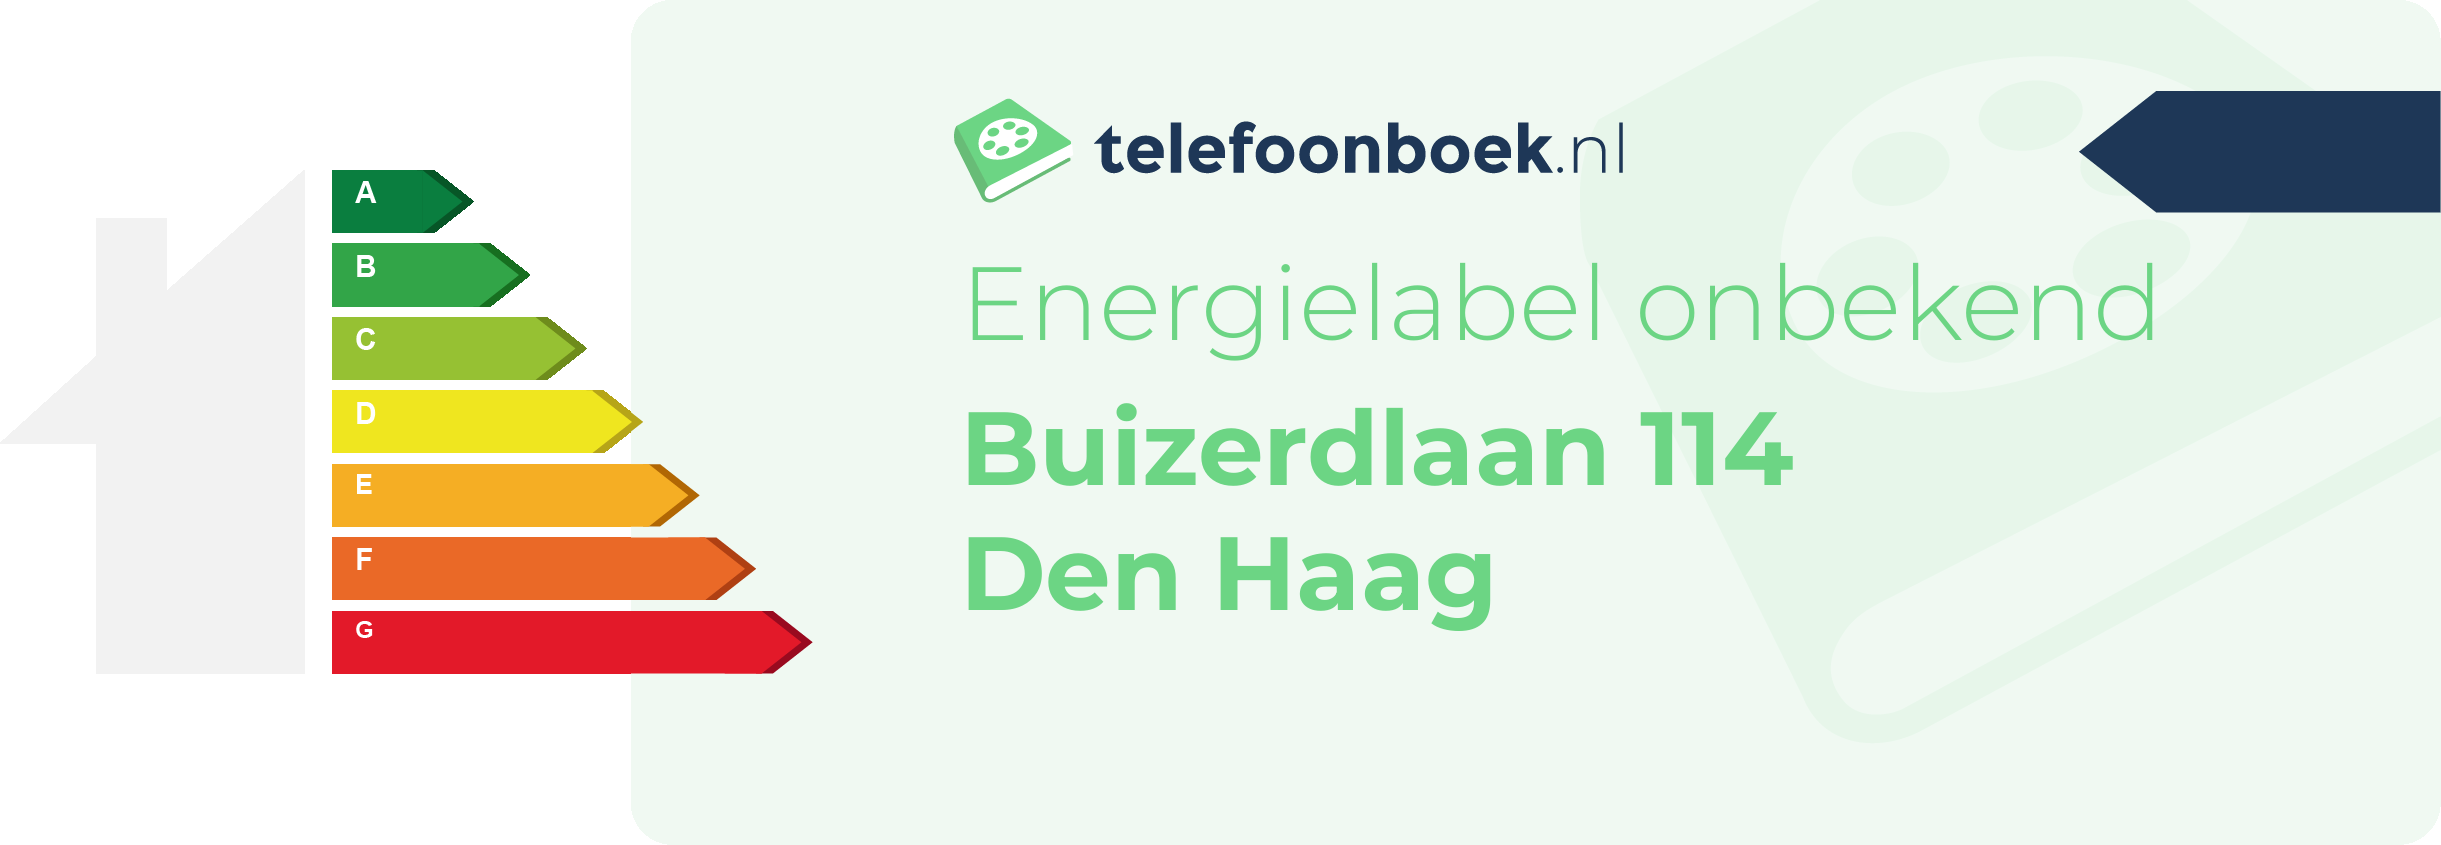 Energielabel Buizerdlaan 114 Den Haag